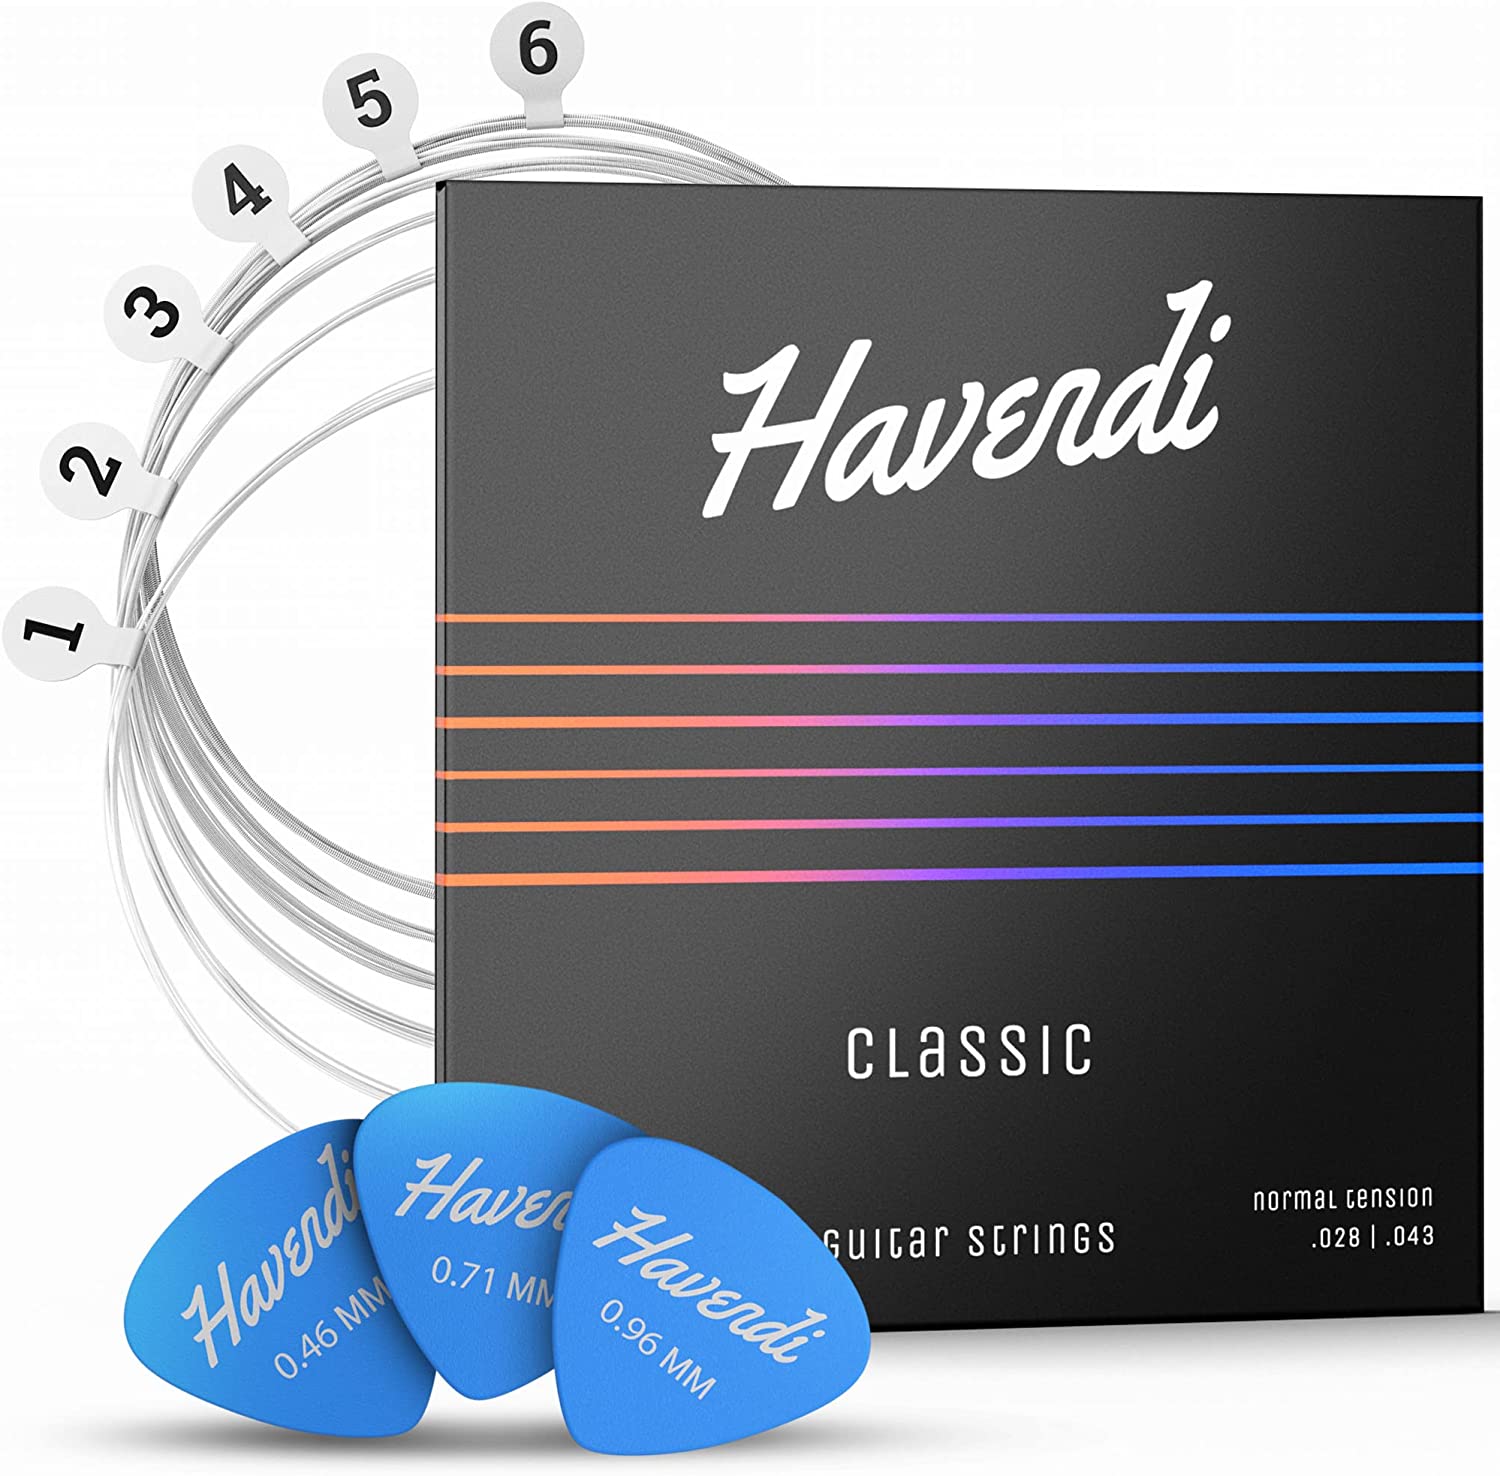 Havendi® guitar strings concert guitar for classical guitar – havendi